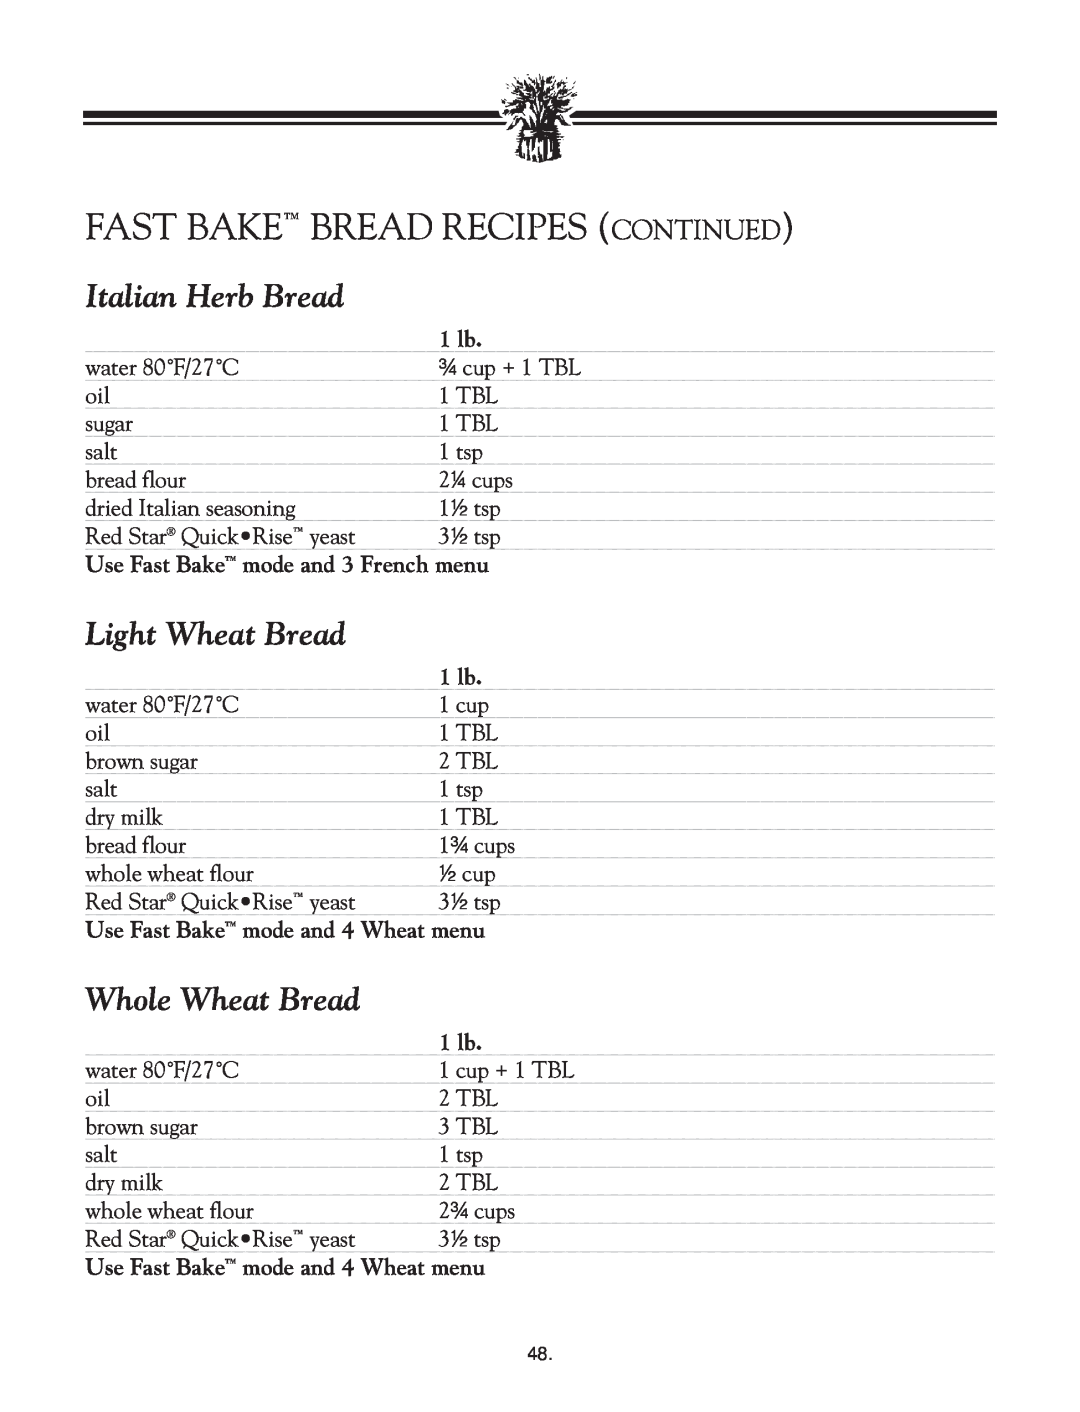 Breadman TR2828G Fast Bake Bread Recipes Continued, Italian Herb Bread, Light Wheat Bread, Whole Wheat Bread, 1 lb 